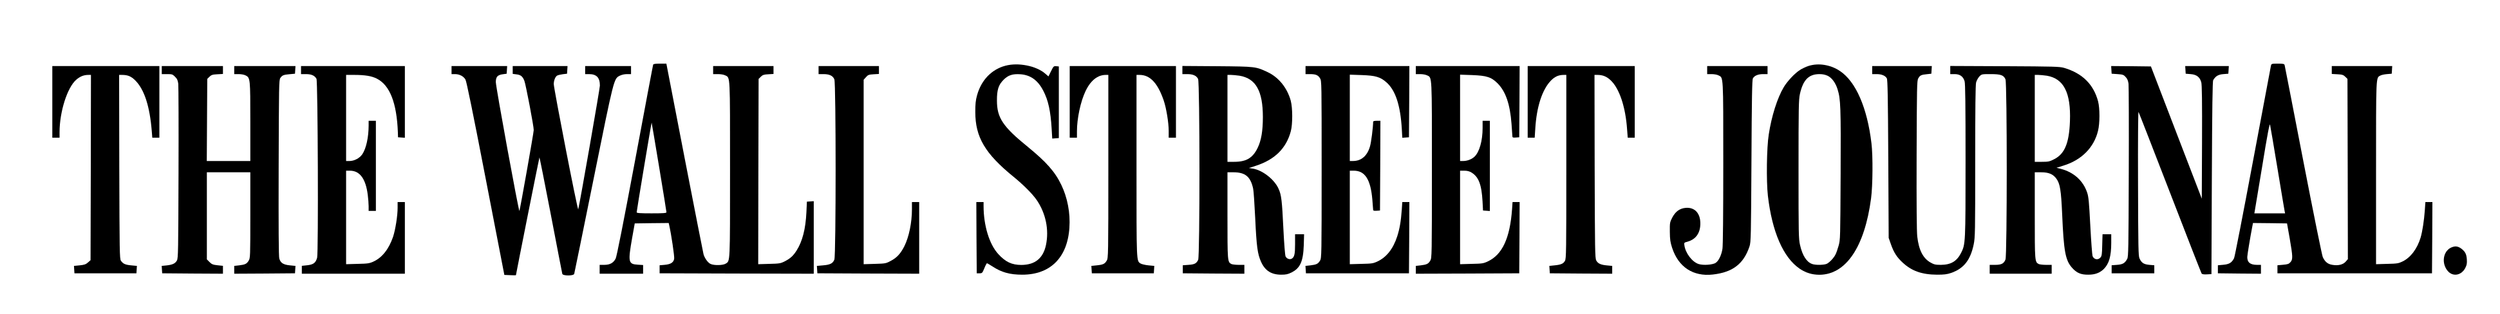 Wall Street Journal Logo.png